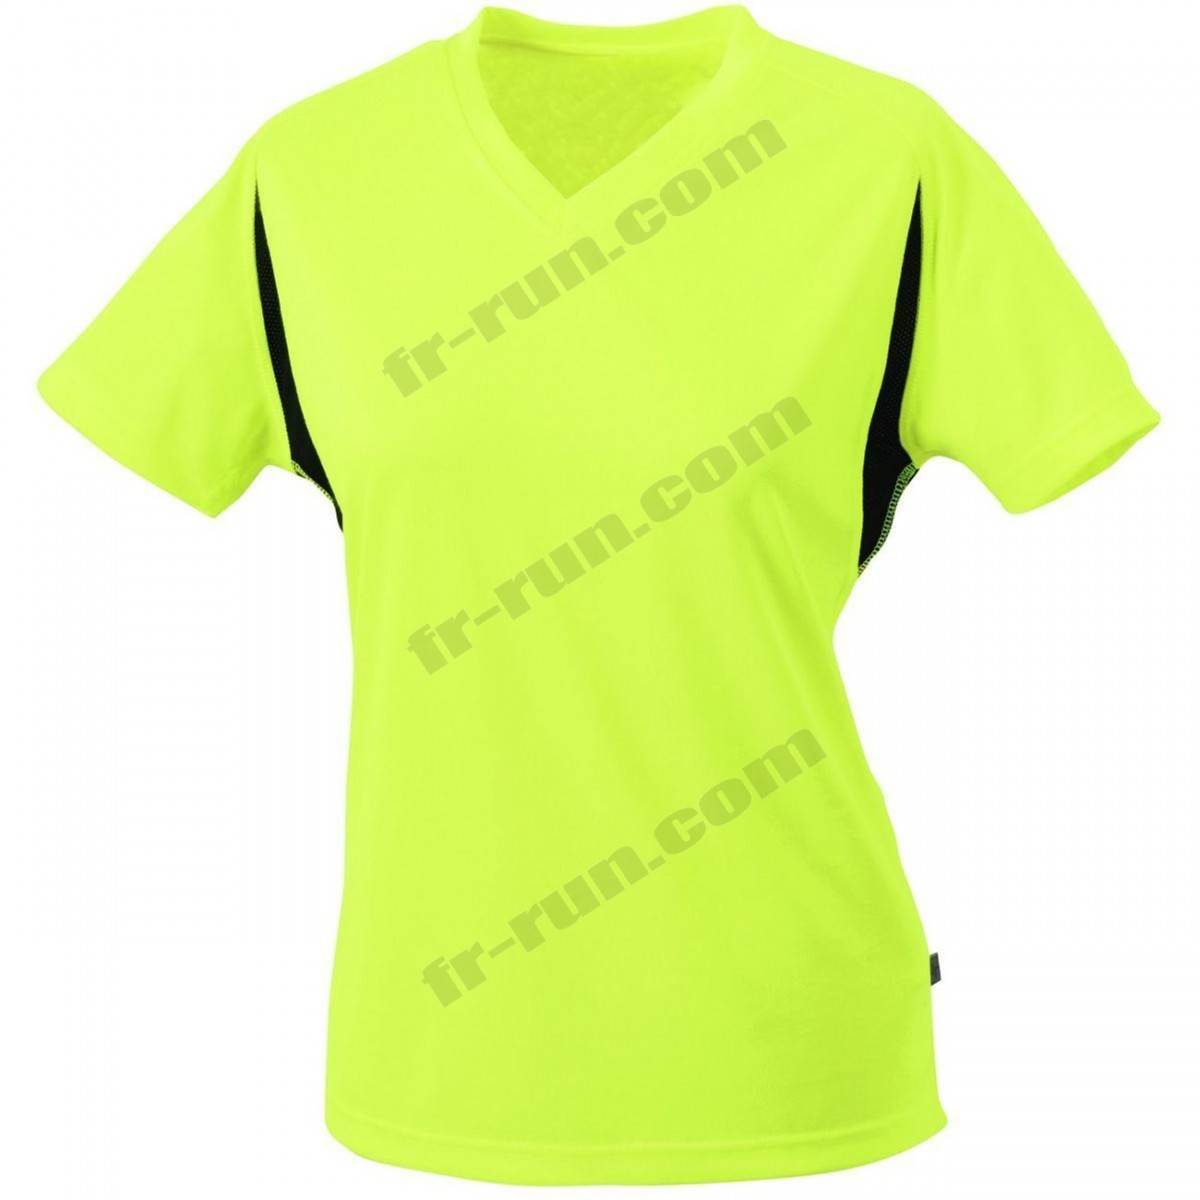 James & Nicholson/Course à pied femme JAMES & NICHOLSON t-shirt running respirant JN316 - jaune fluo - FEMME √ Nouveau style √ Soldes - -0